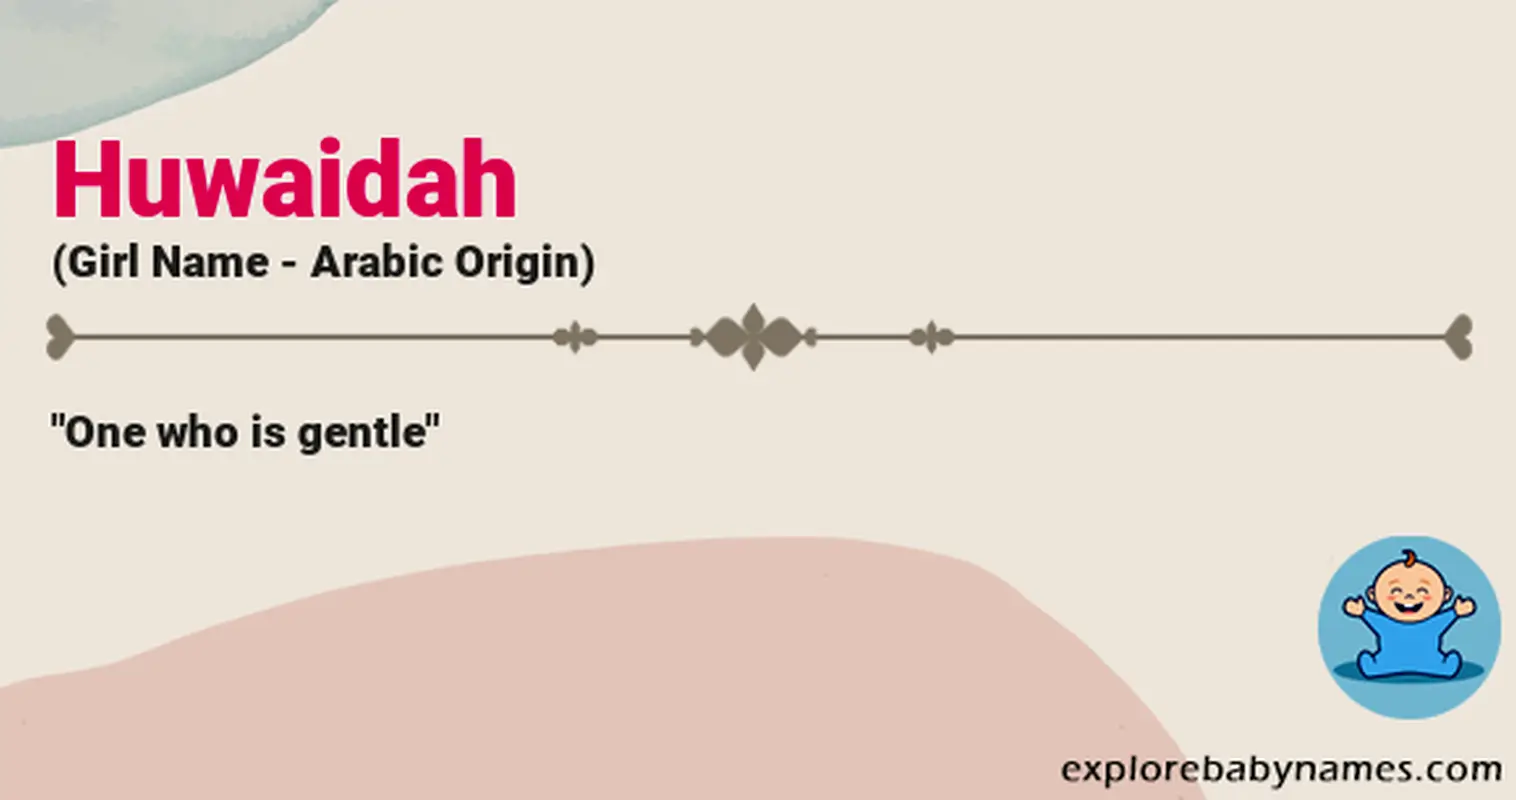 Meaning of Huwaidah